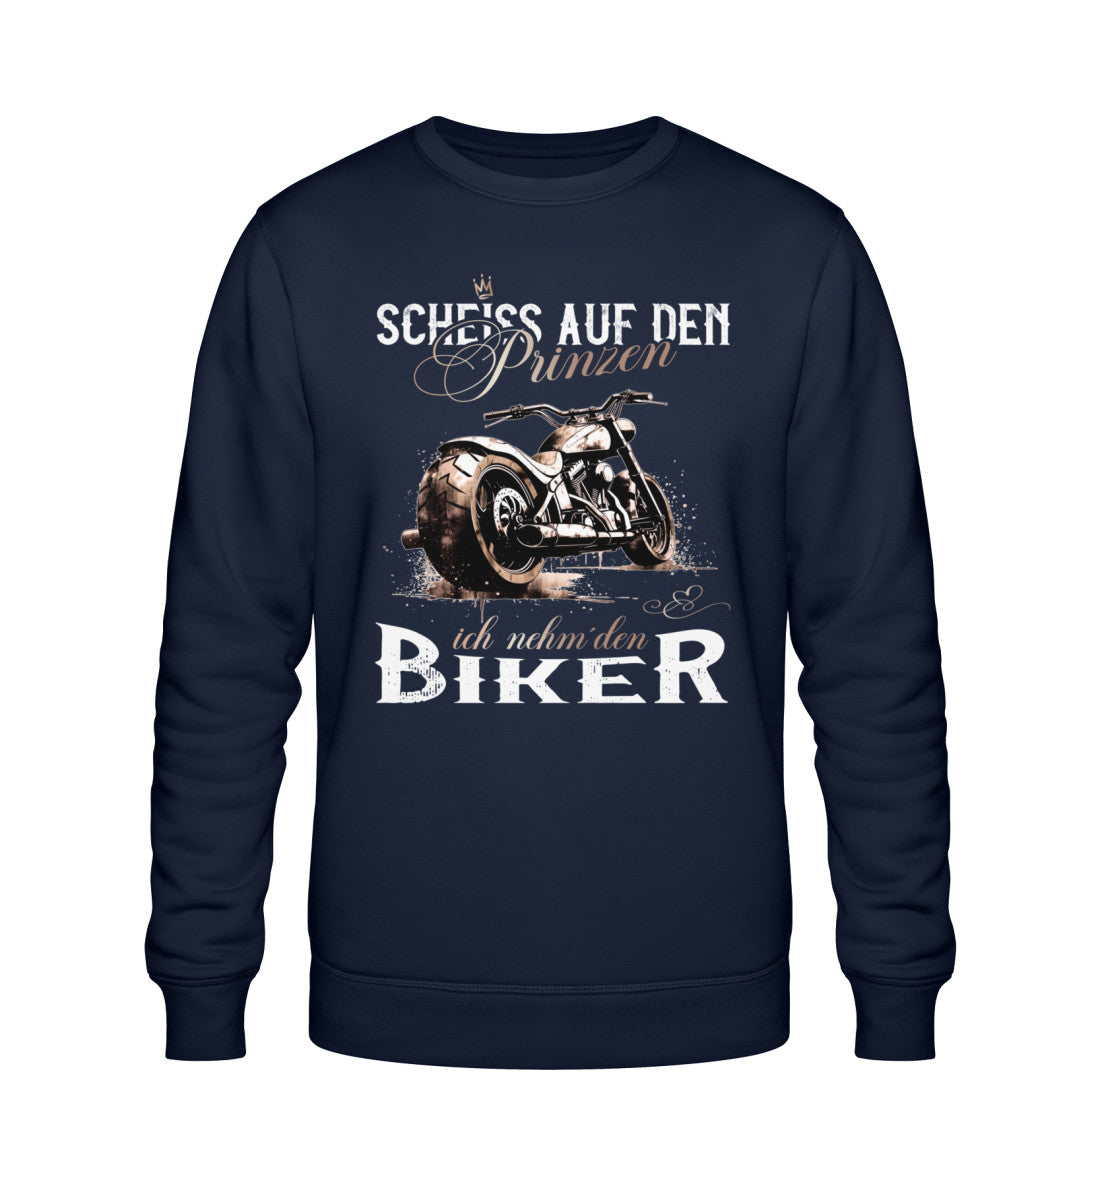 Ein Sweatshirt für Motorradfahrerinnen von Wingbikers mit dem Aufdruck, Scheiß auf den Prinzen, ich nehm' den Biker, in navy blau.